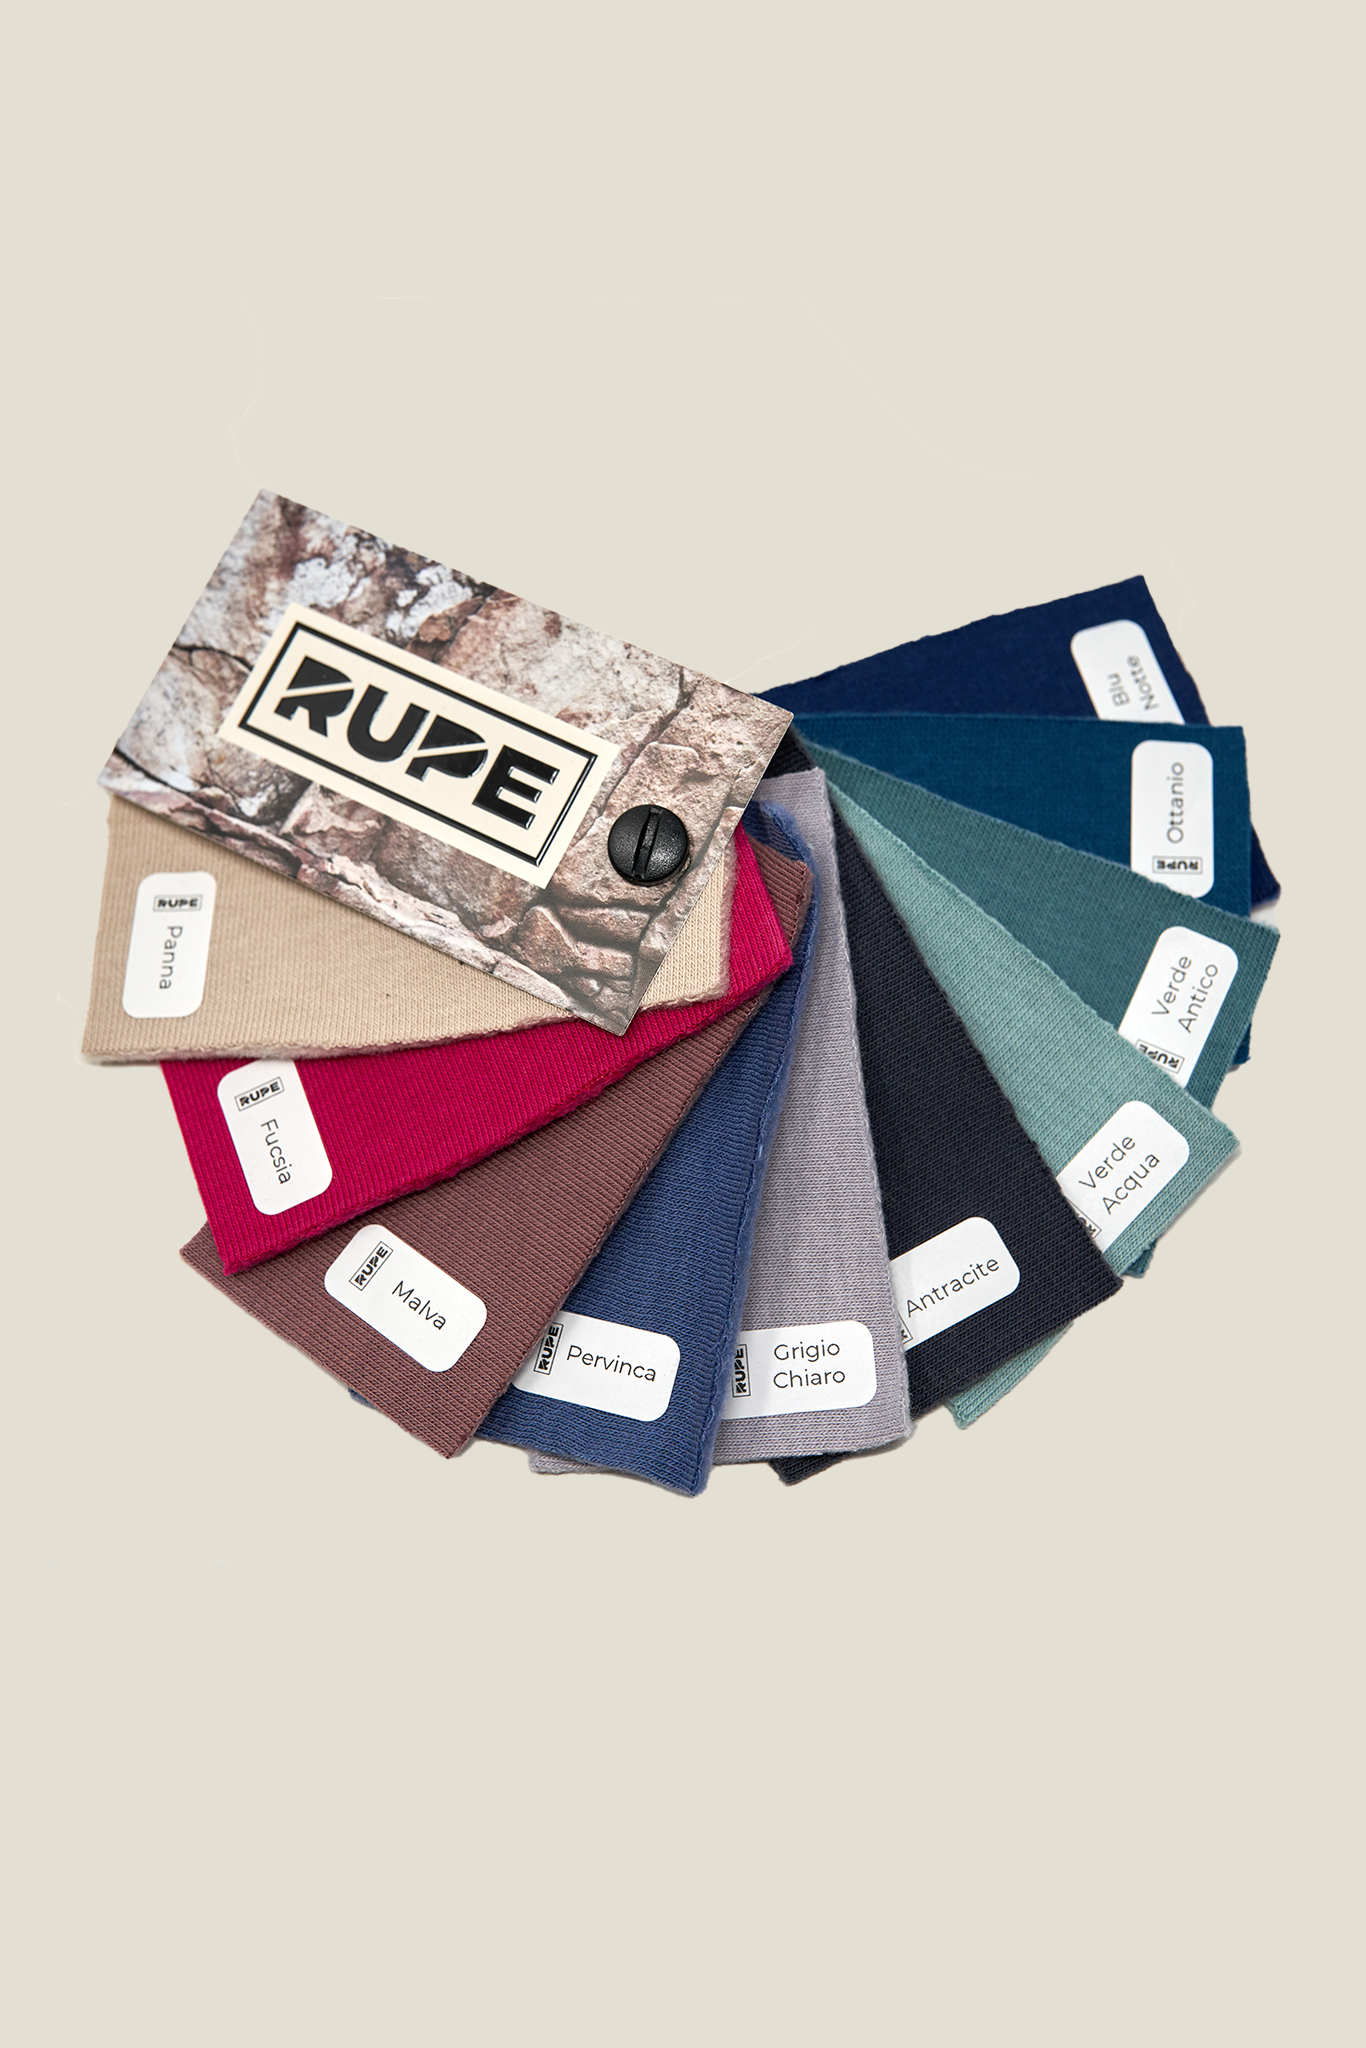 Coffret cadeau Rupe - Sweat-shirt personnalisé fait main + boîte d'échantillons de tissu